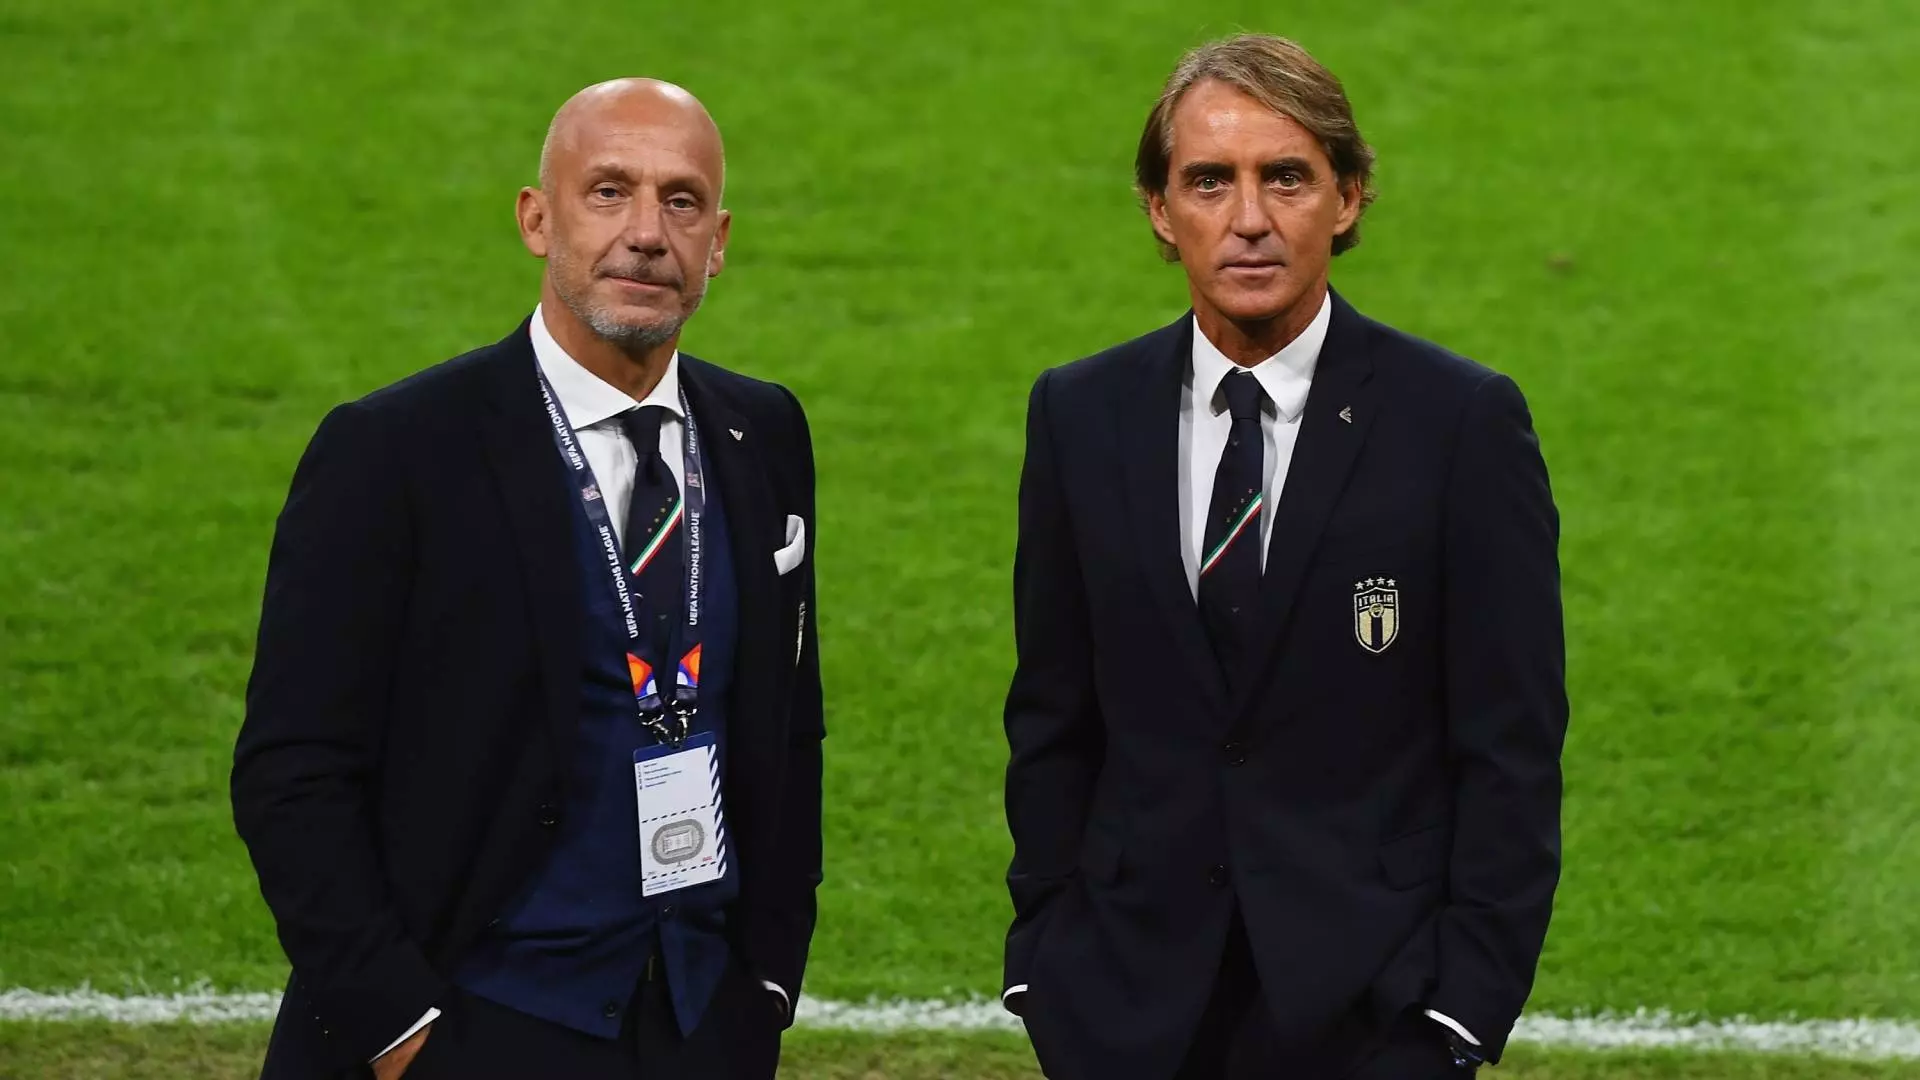 Italia in campo, da Roberto Mancini dedica a Vialli: “Ci penso sempre”